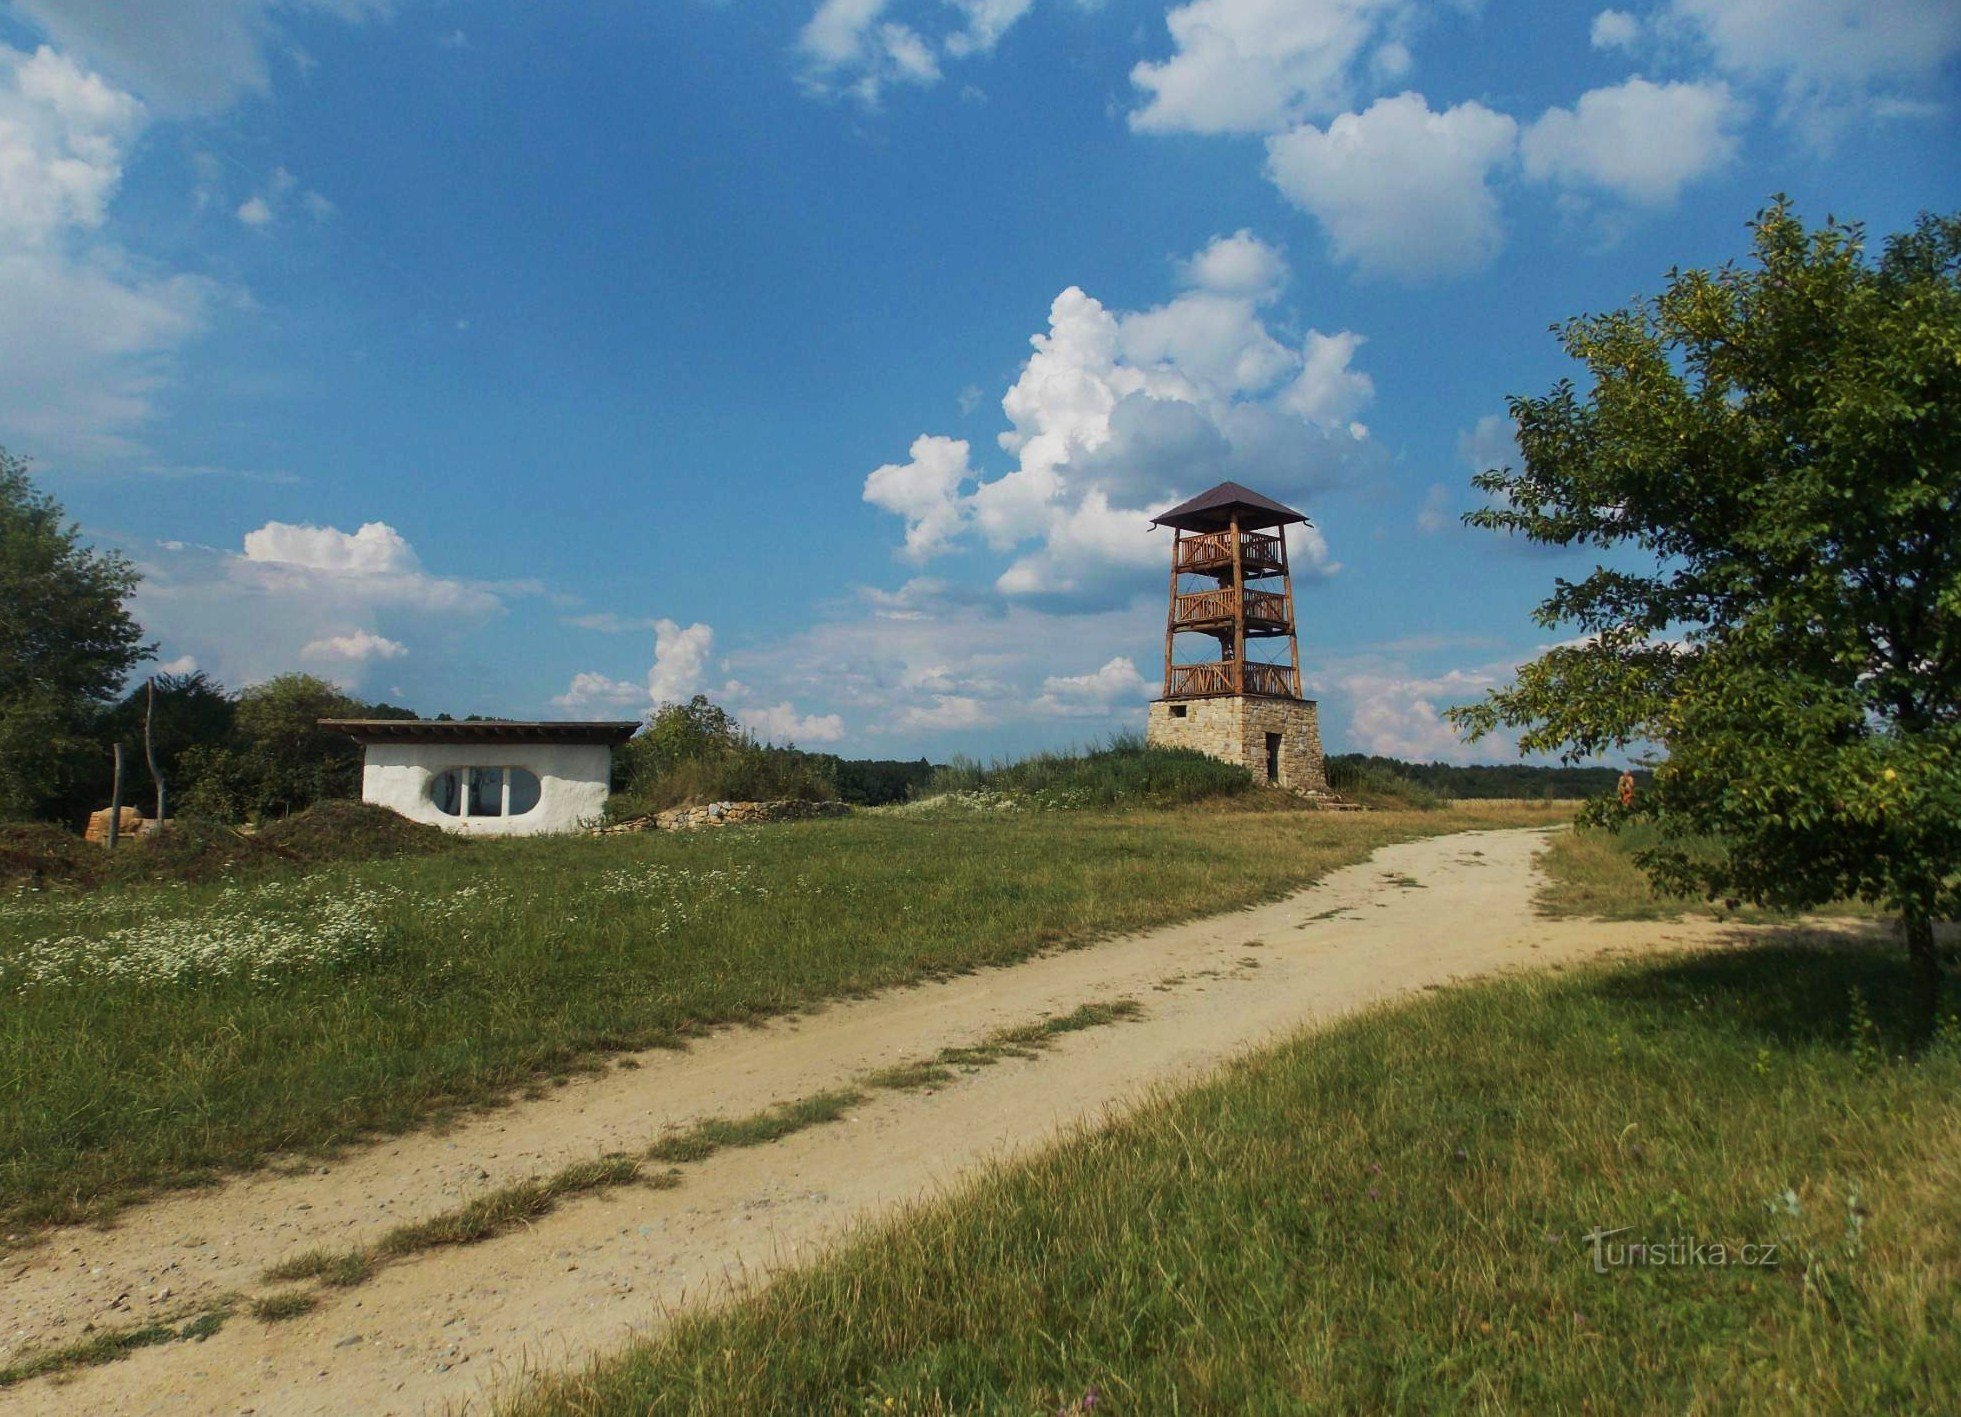 Tháp quan sát mới ở Hostišová gần Zlín